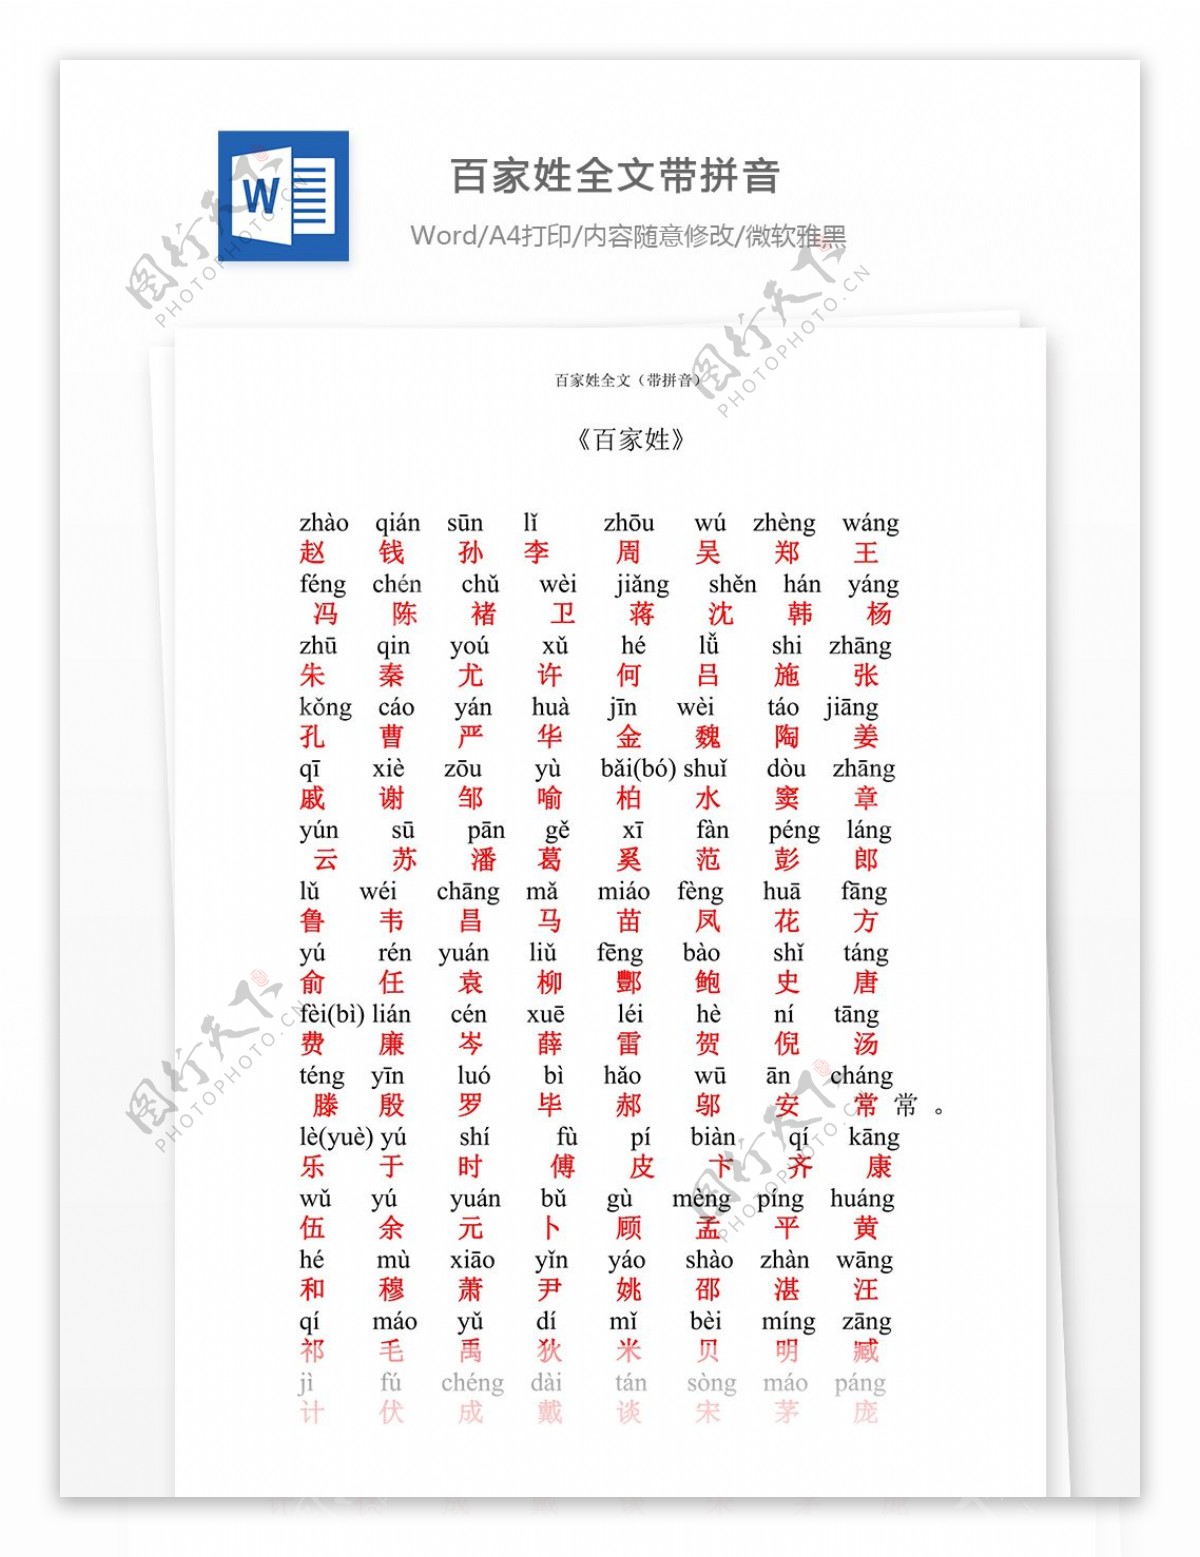 1百家姓全文带拼音打印